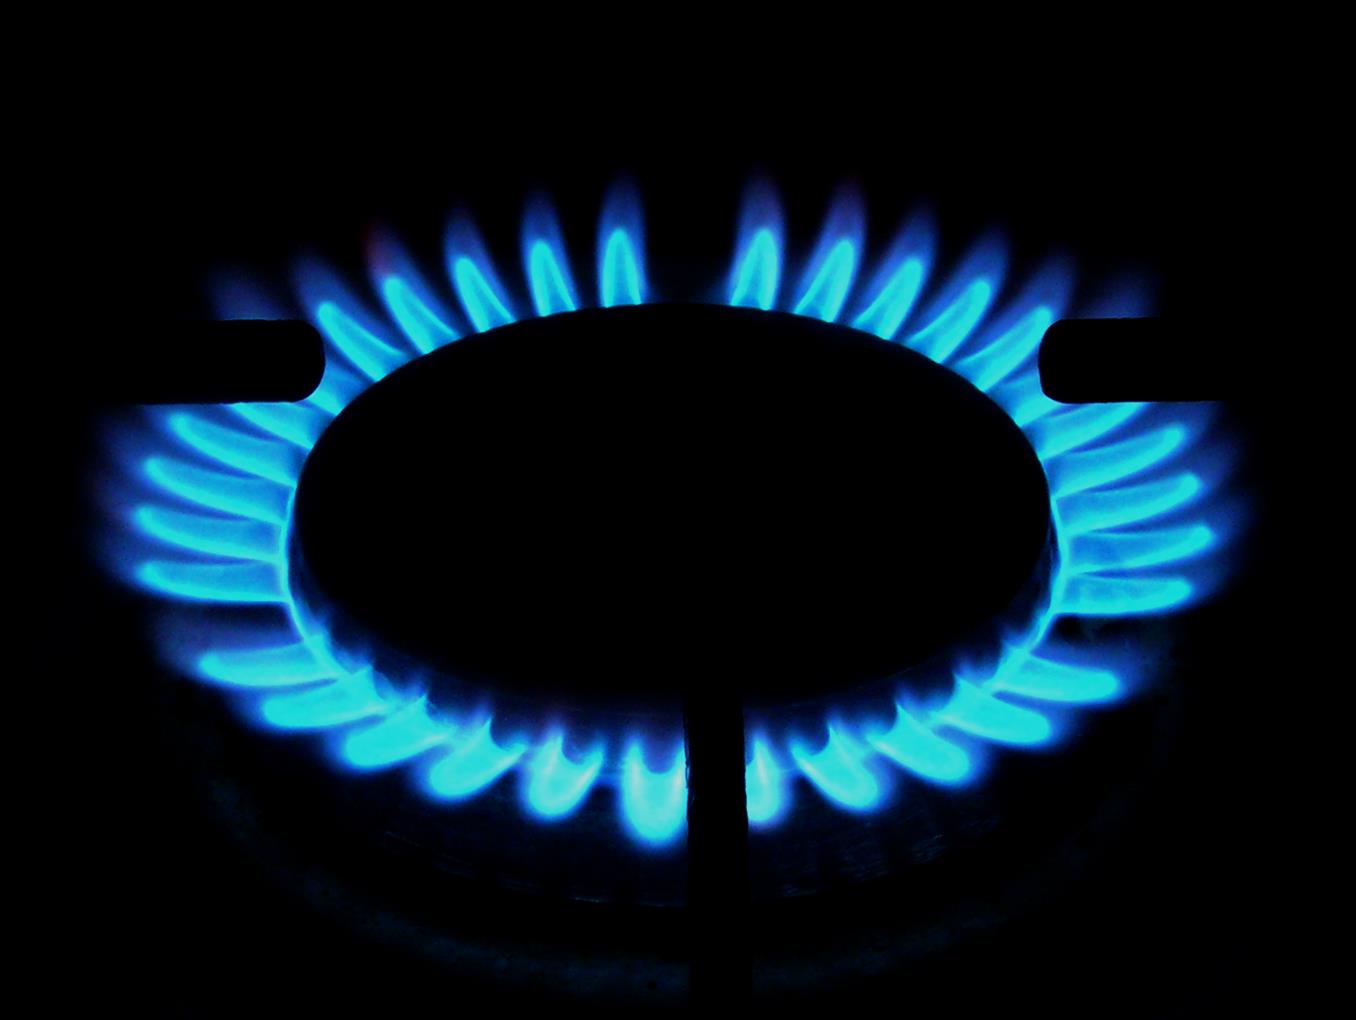 SVANTAGGI: Il principale problema del settore del gas naturale è la reperibilità della materia prima e le infrastrutture.